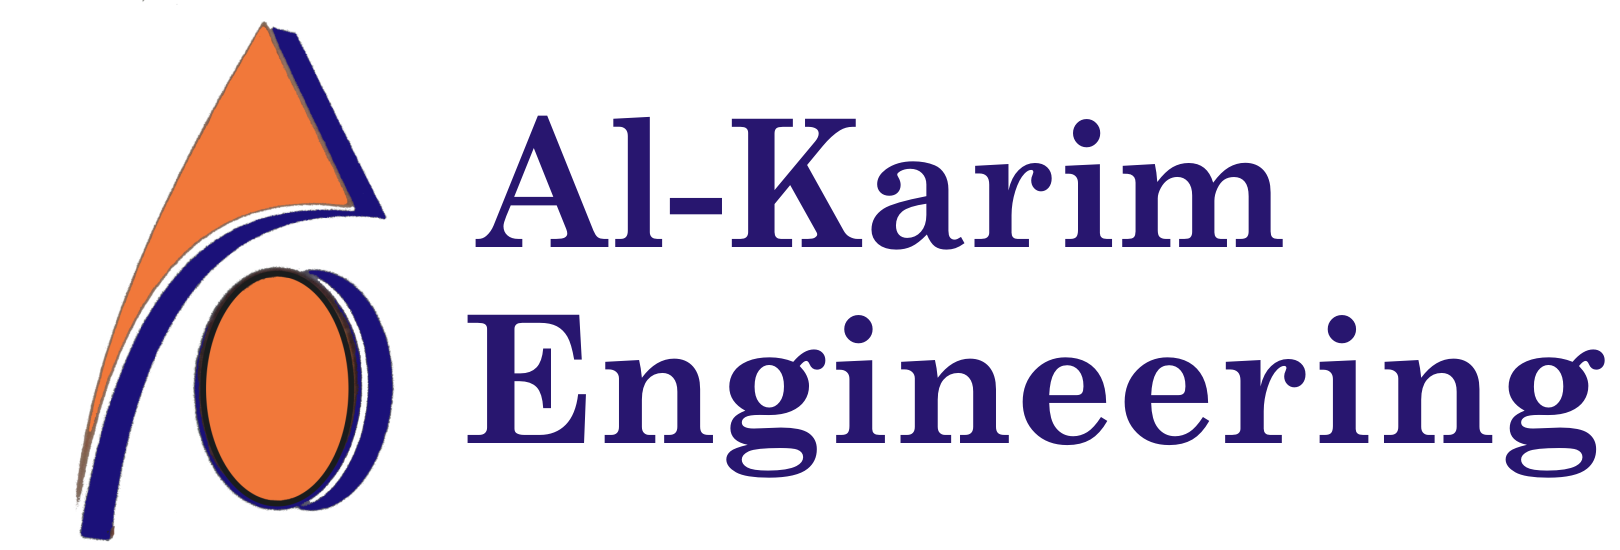 Al Karim Engineering